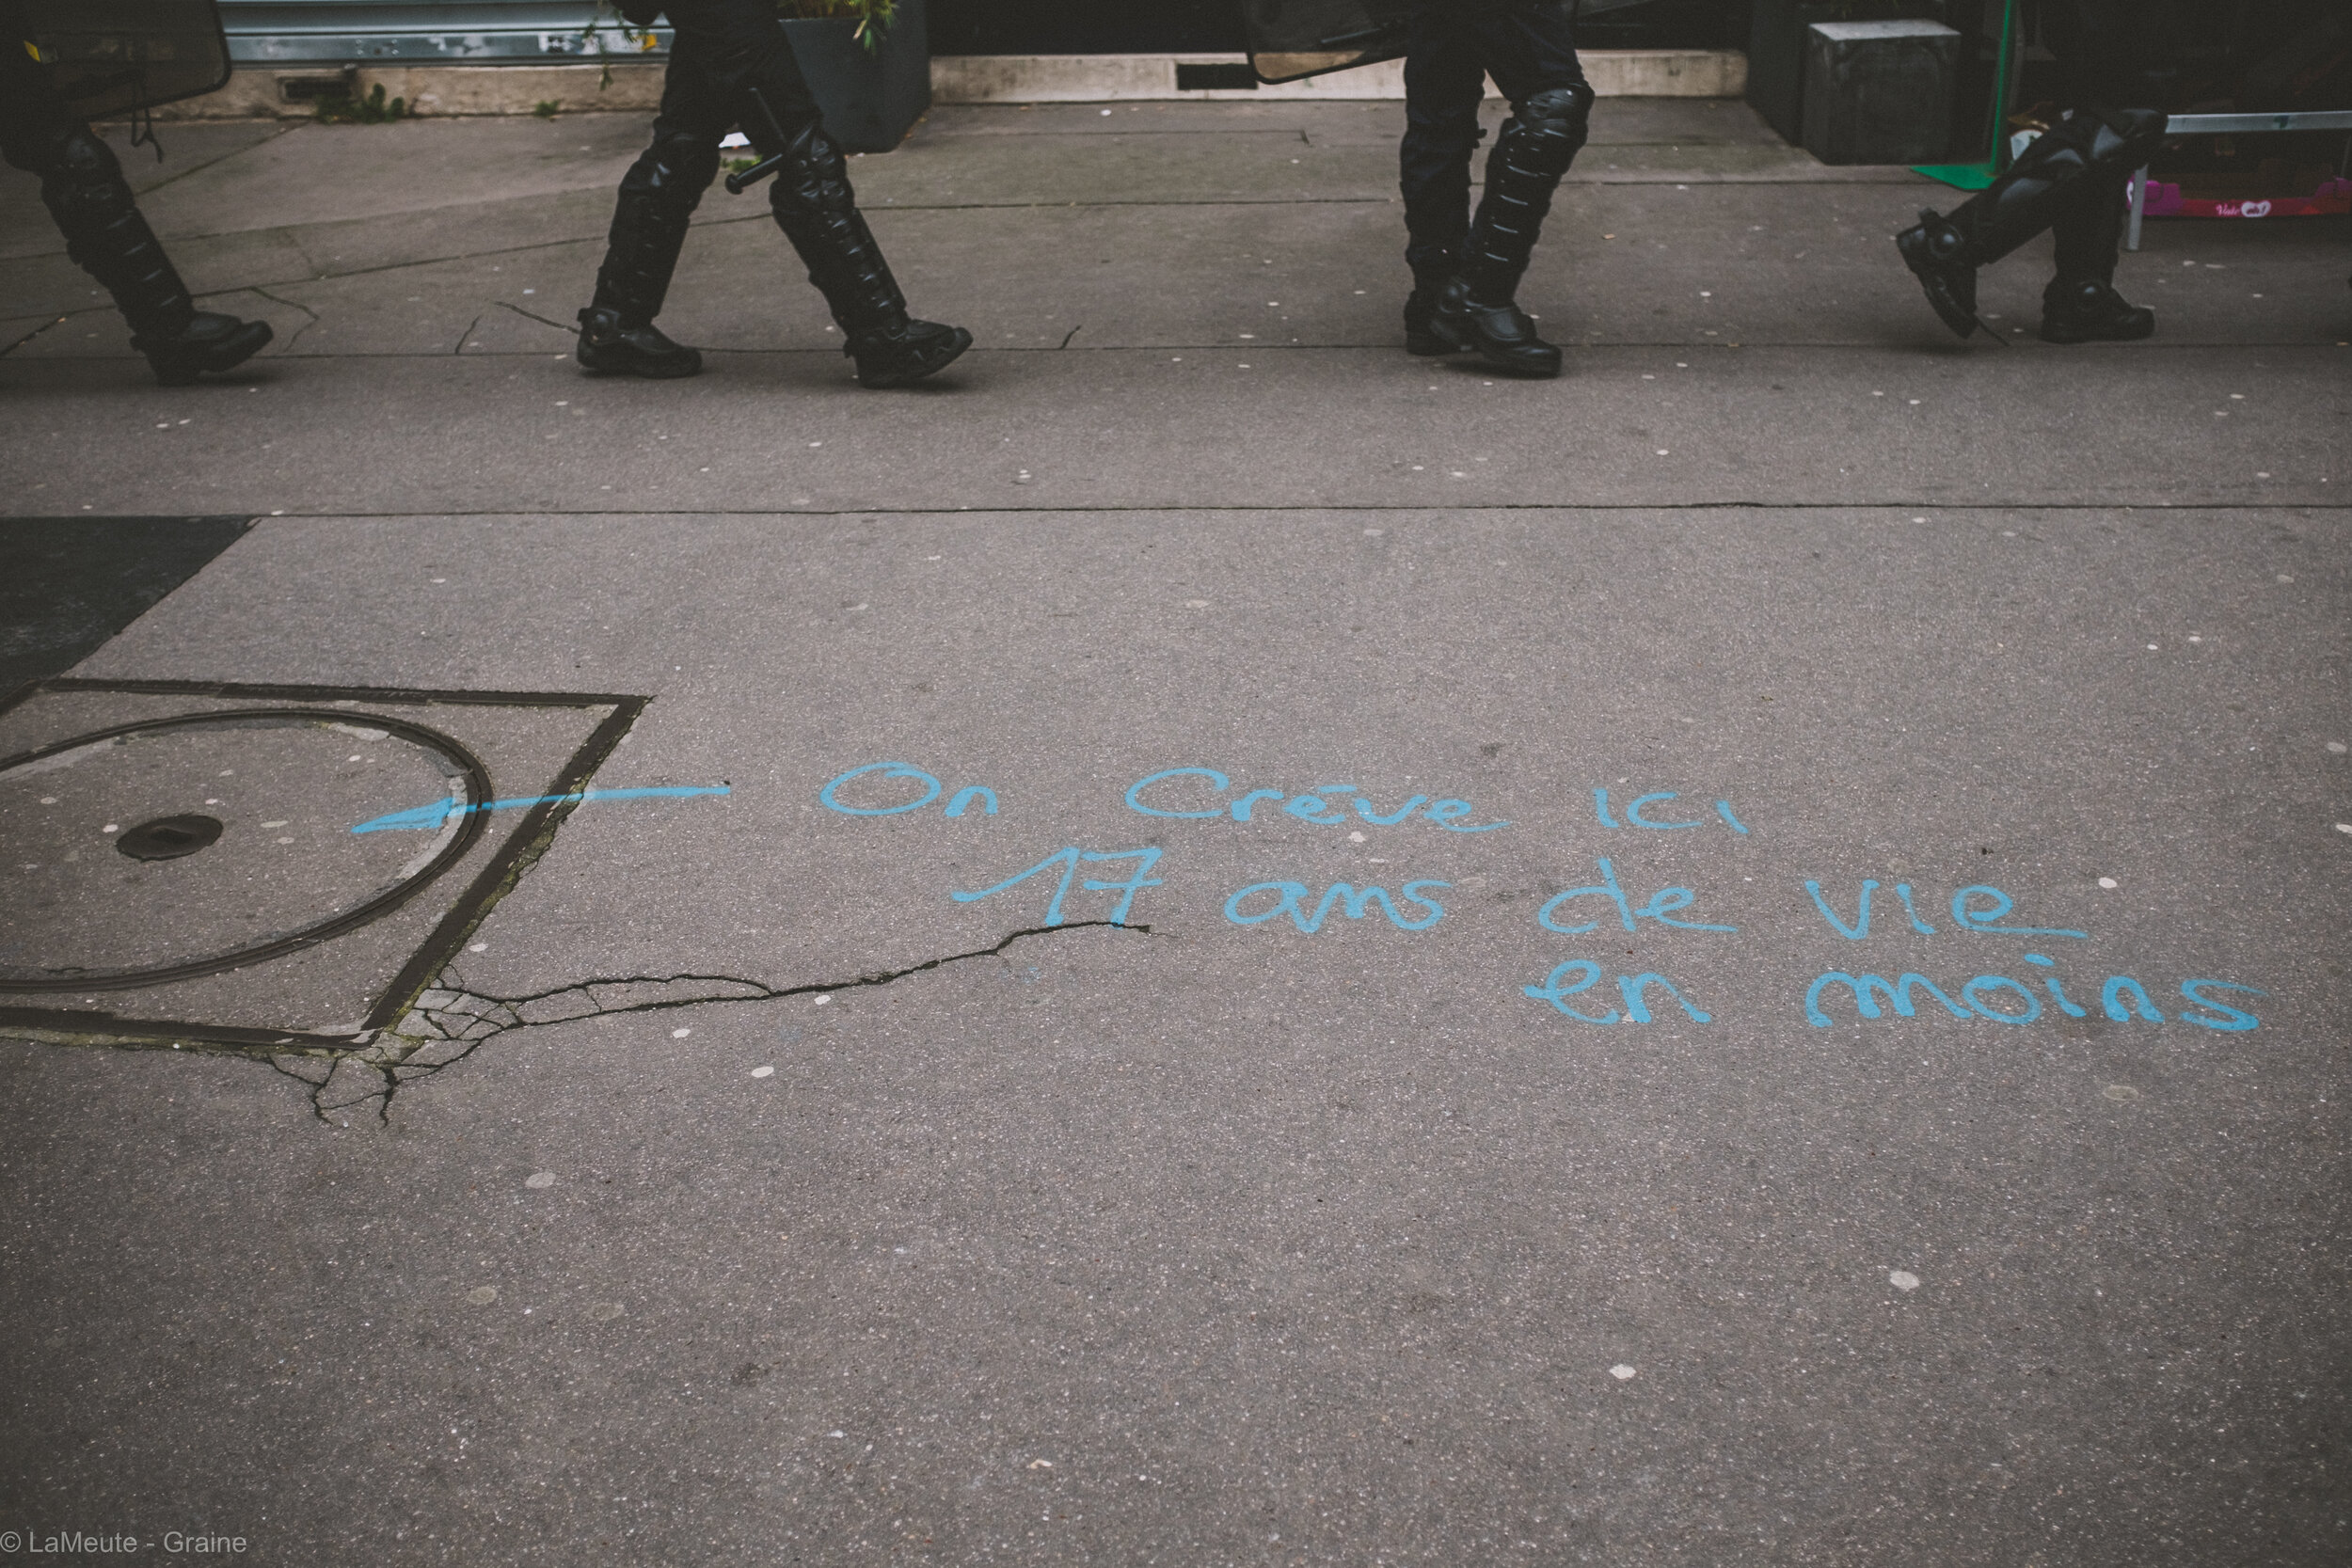  Symbole de toutes ces luttes invisibles révélées par la grève en cours, les égoutier-es de Paris en grève ont inscrit sur les plaques d’égout “ Ici on crève / 17 ans de vie en moins”  ©LaMeute - Graine 